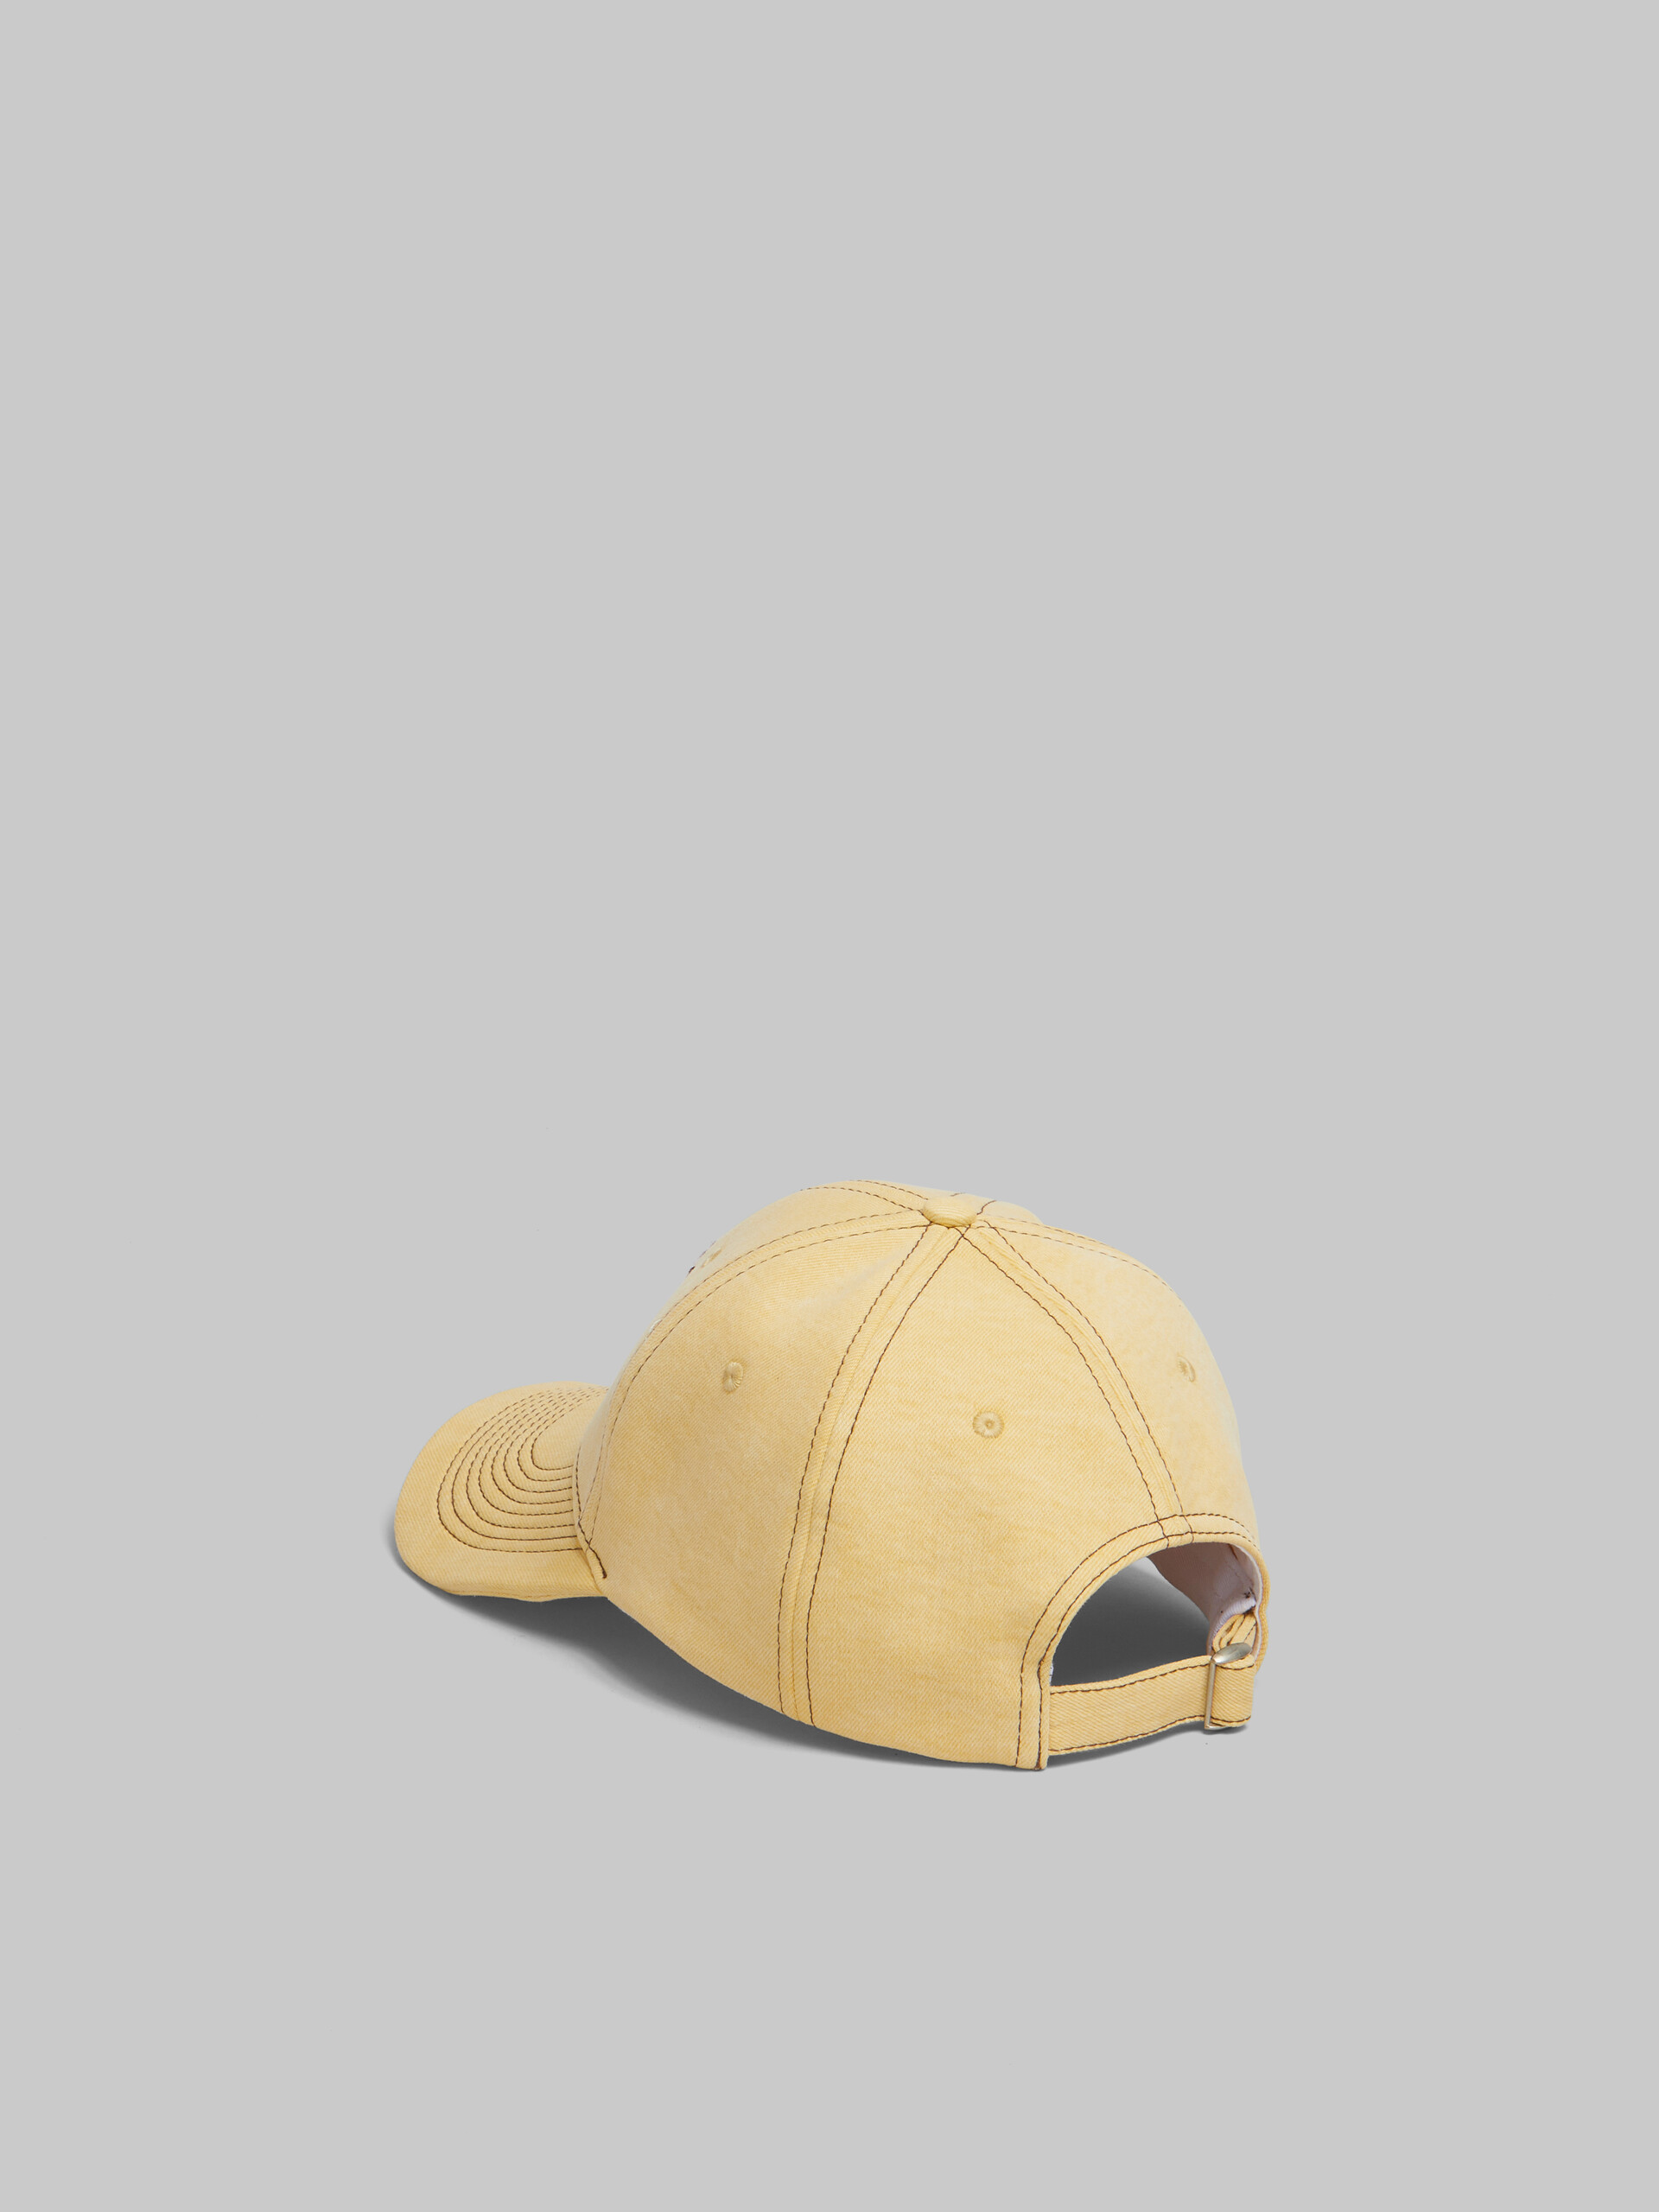 Casquette de baseball Marni en denim organique jaune avec surpiqûres - Chapeau - Image 3